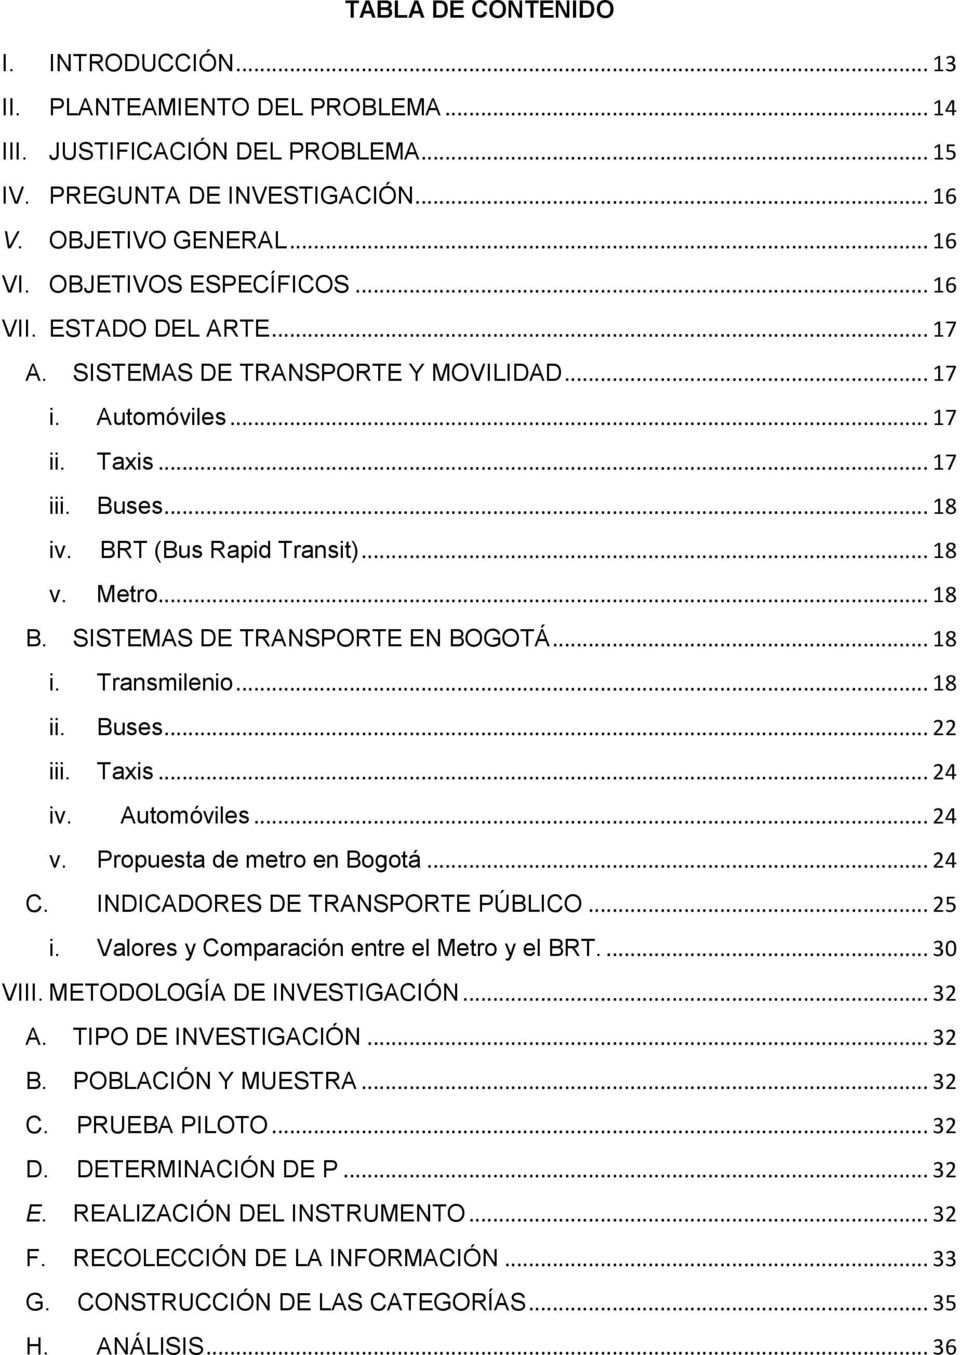 .. 18 B. SISTEMAS DE TRANSPORTE EN BOGOTÁ... 18 i. Transmilenio... 18 ii. Buses... 22 iii. Taxis... 24 iv. Automóviles... 24 v. Propuesta de metro en Bogotá... 24 C. INDICADORES DE TRANSPORTE PÚBLICO.